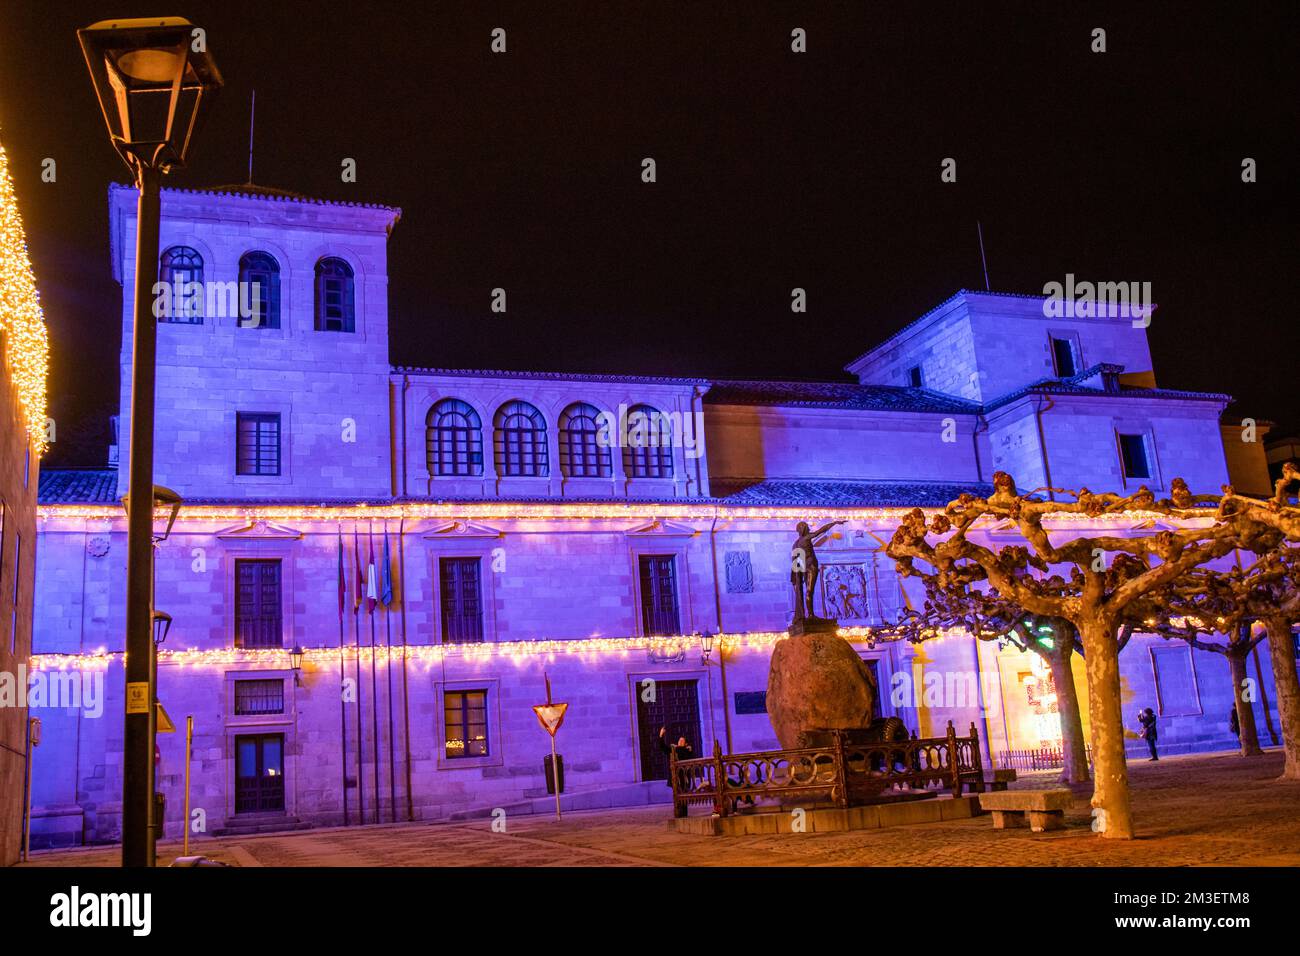 Plaza Viriato en Zamora, España, con la decoración navideña Stock Photo